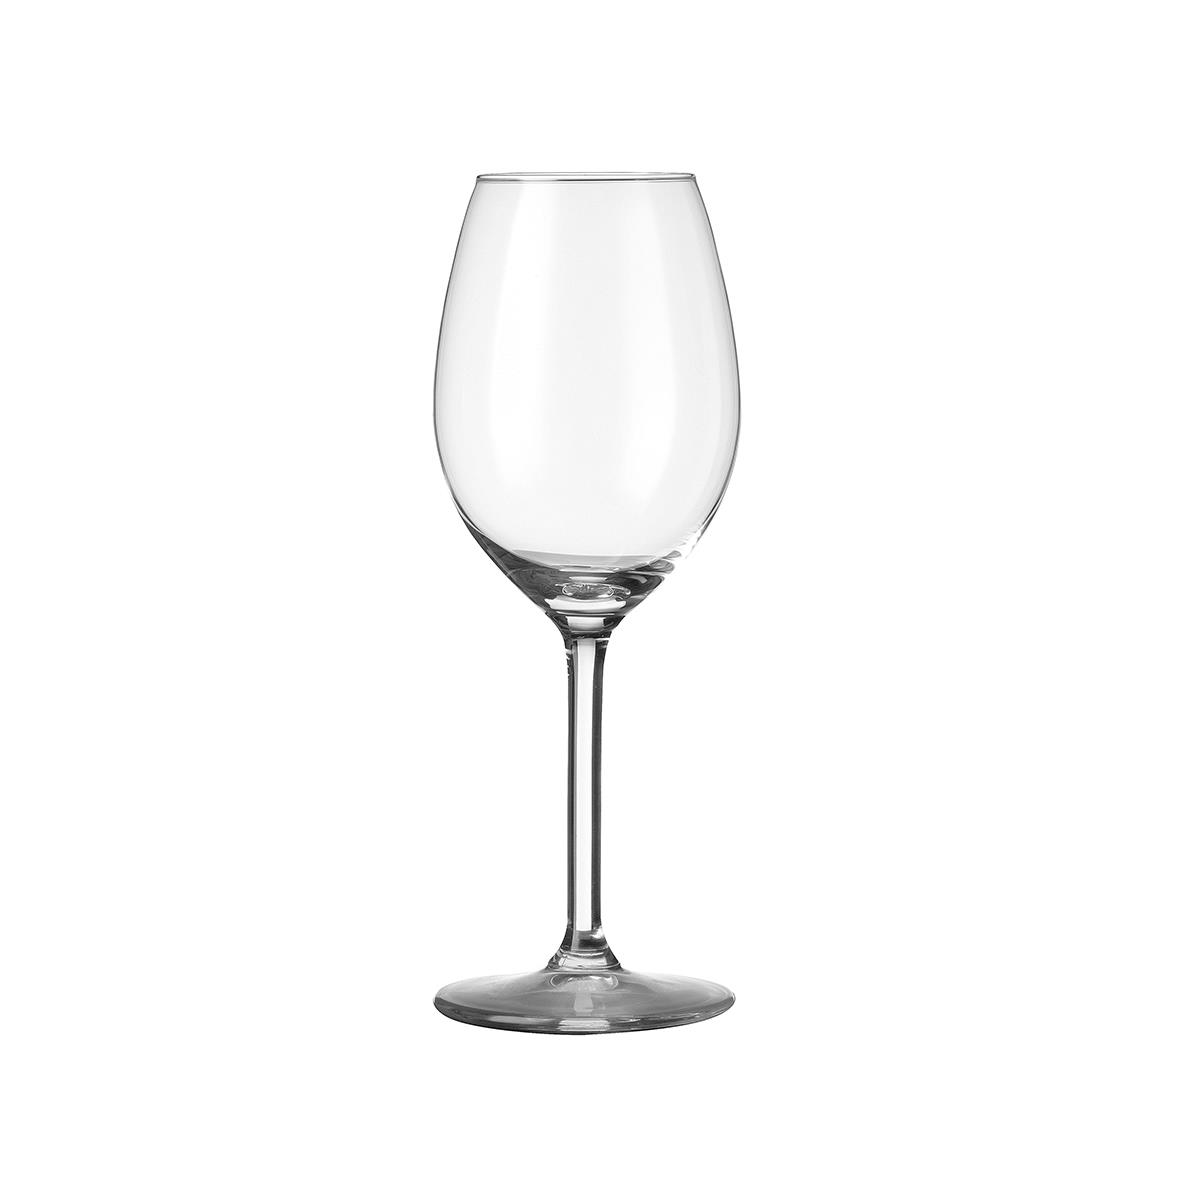 Esprit Wijnglas 25 cl. graveren